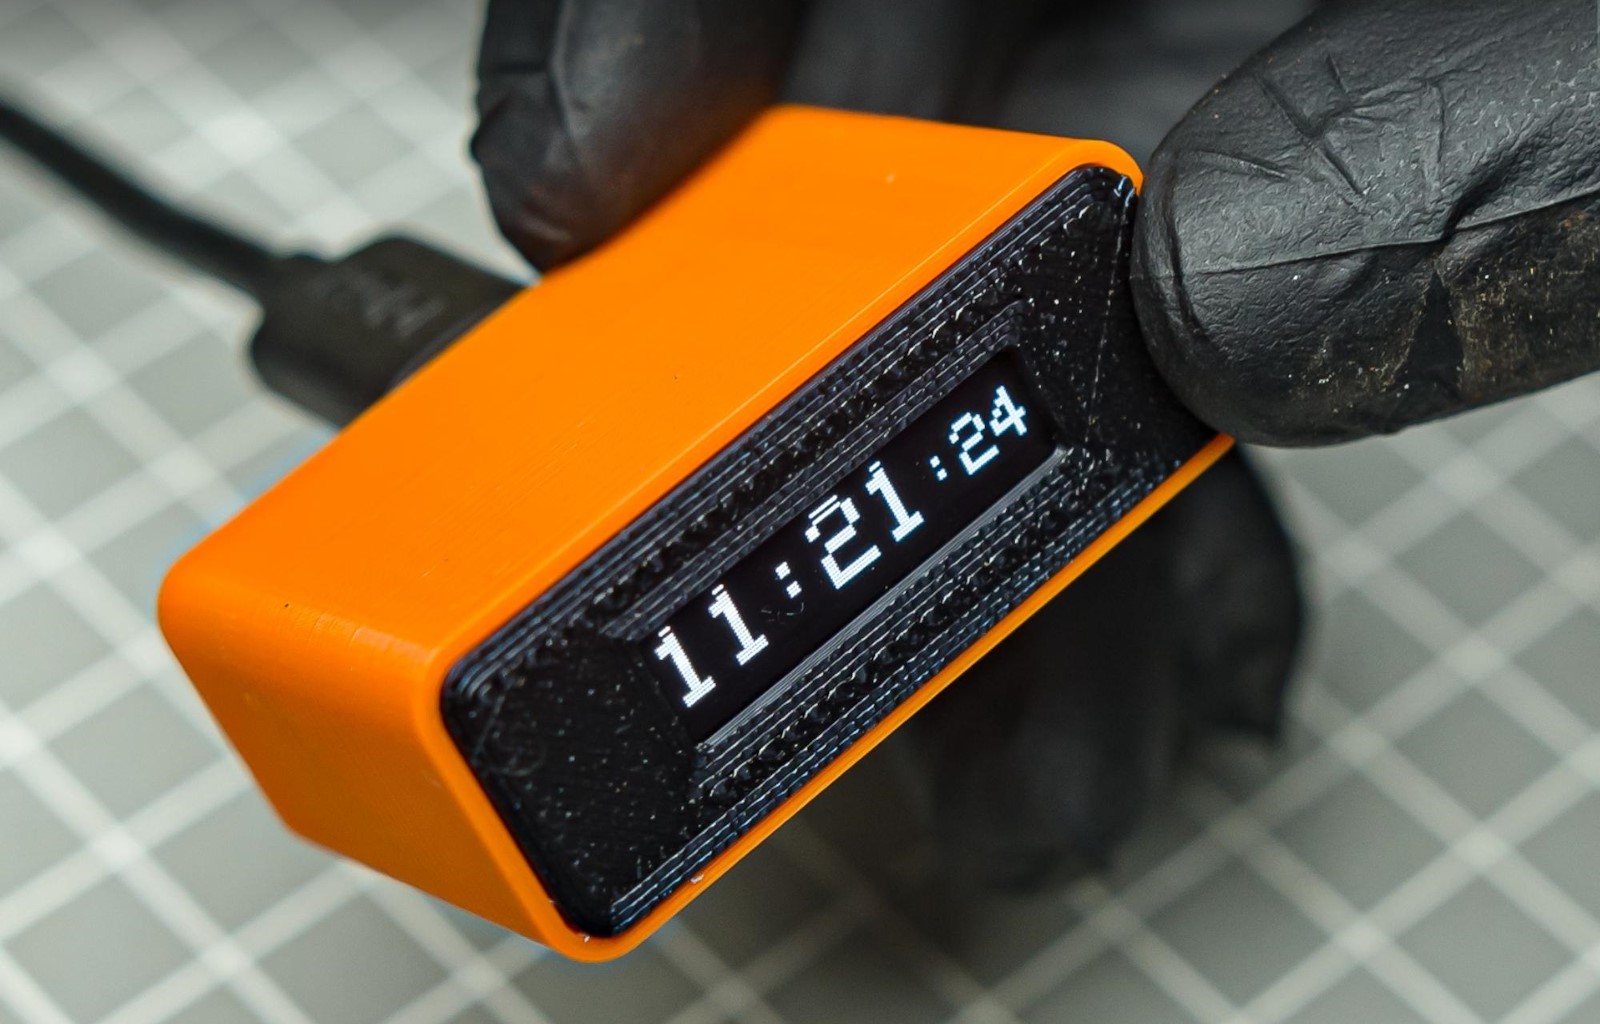 Tiny Internet Clock: Construye un pequeño reloj con WiFi